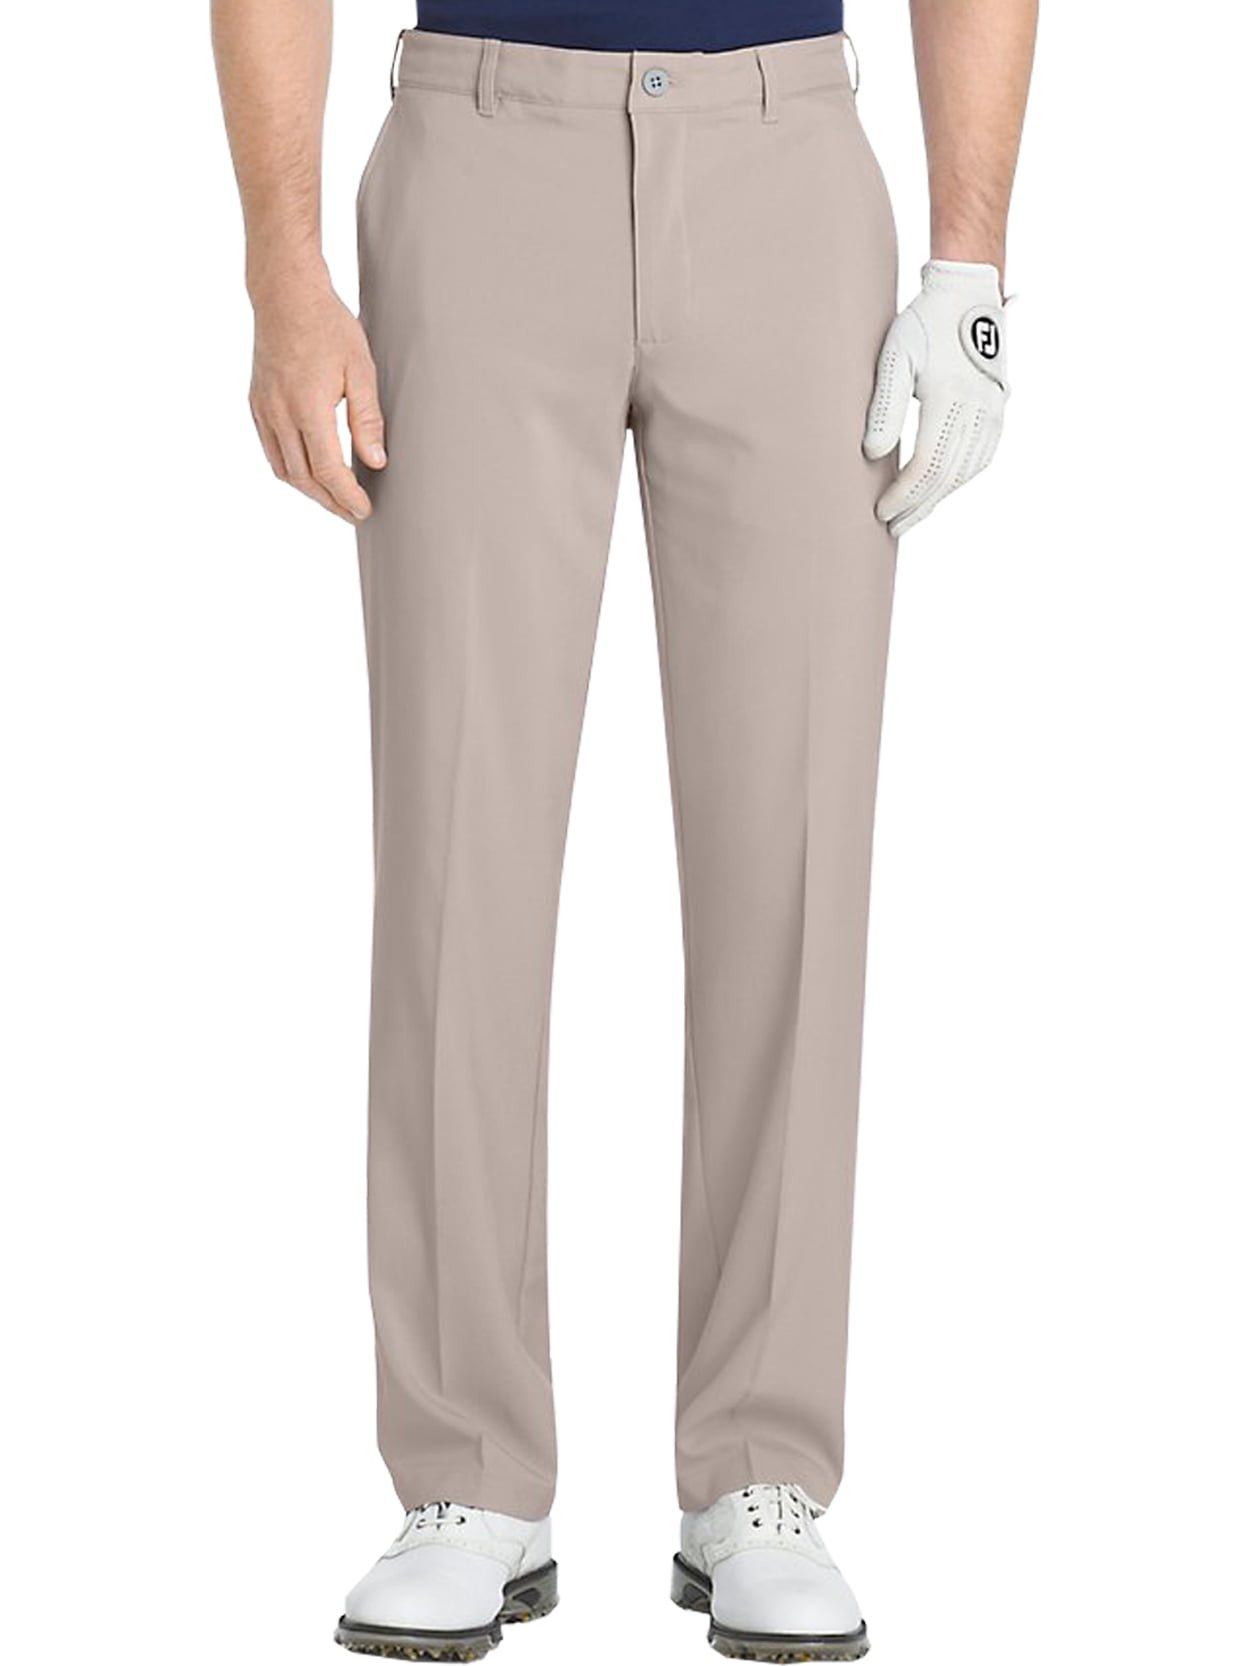 IZOD Golf Men's Swingflex Slim Fit Pant, Brand New - - Walmart.com